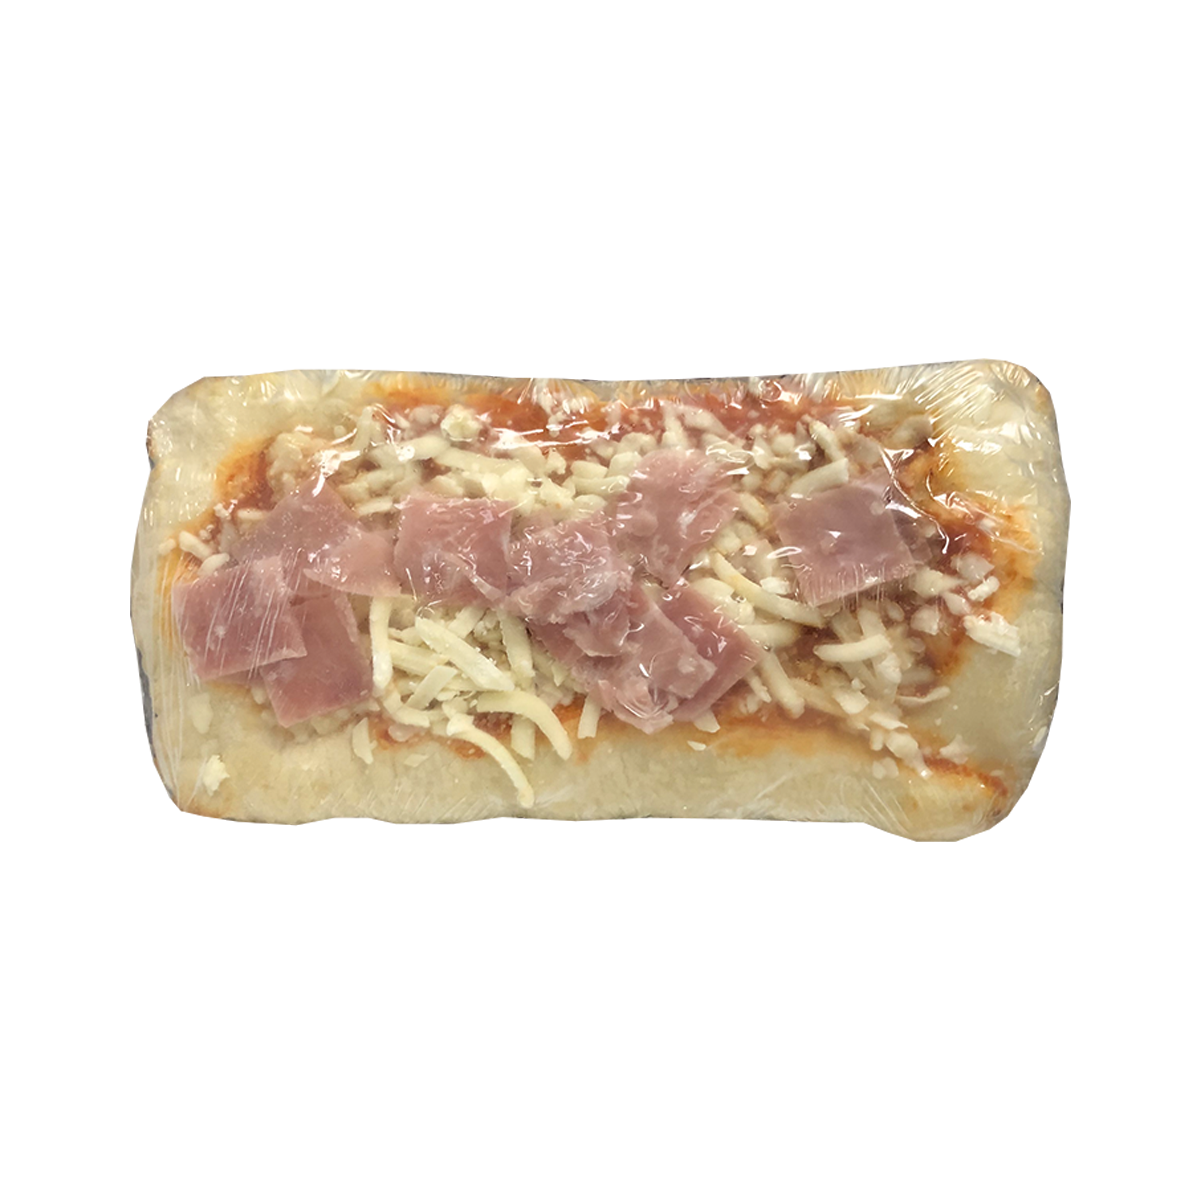 Frozen Ham Pizza Slice